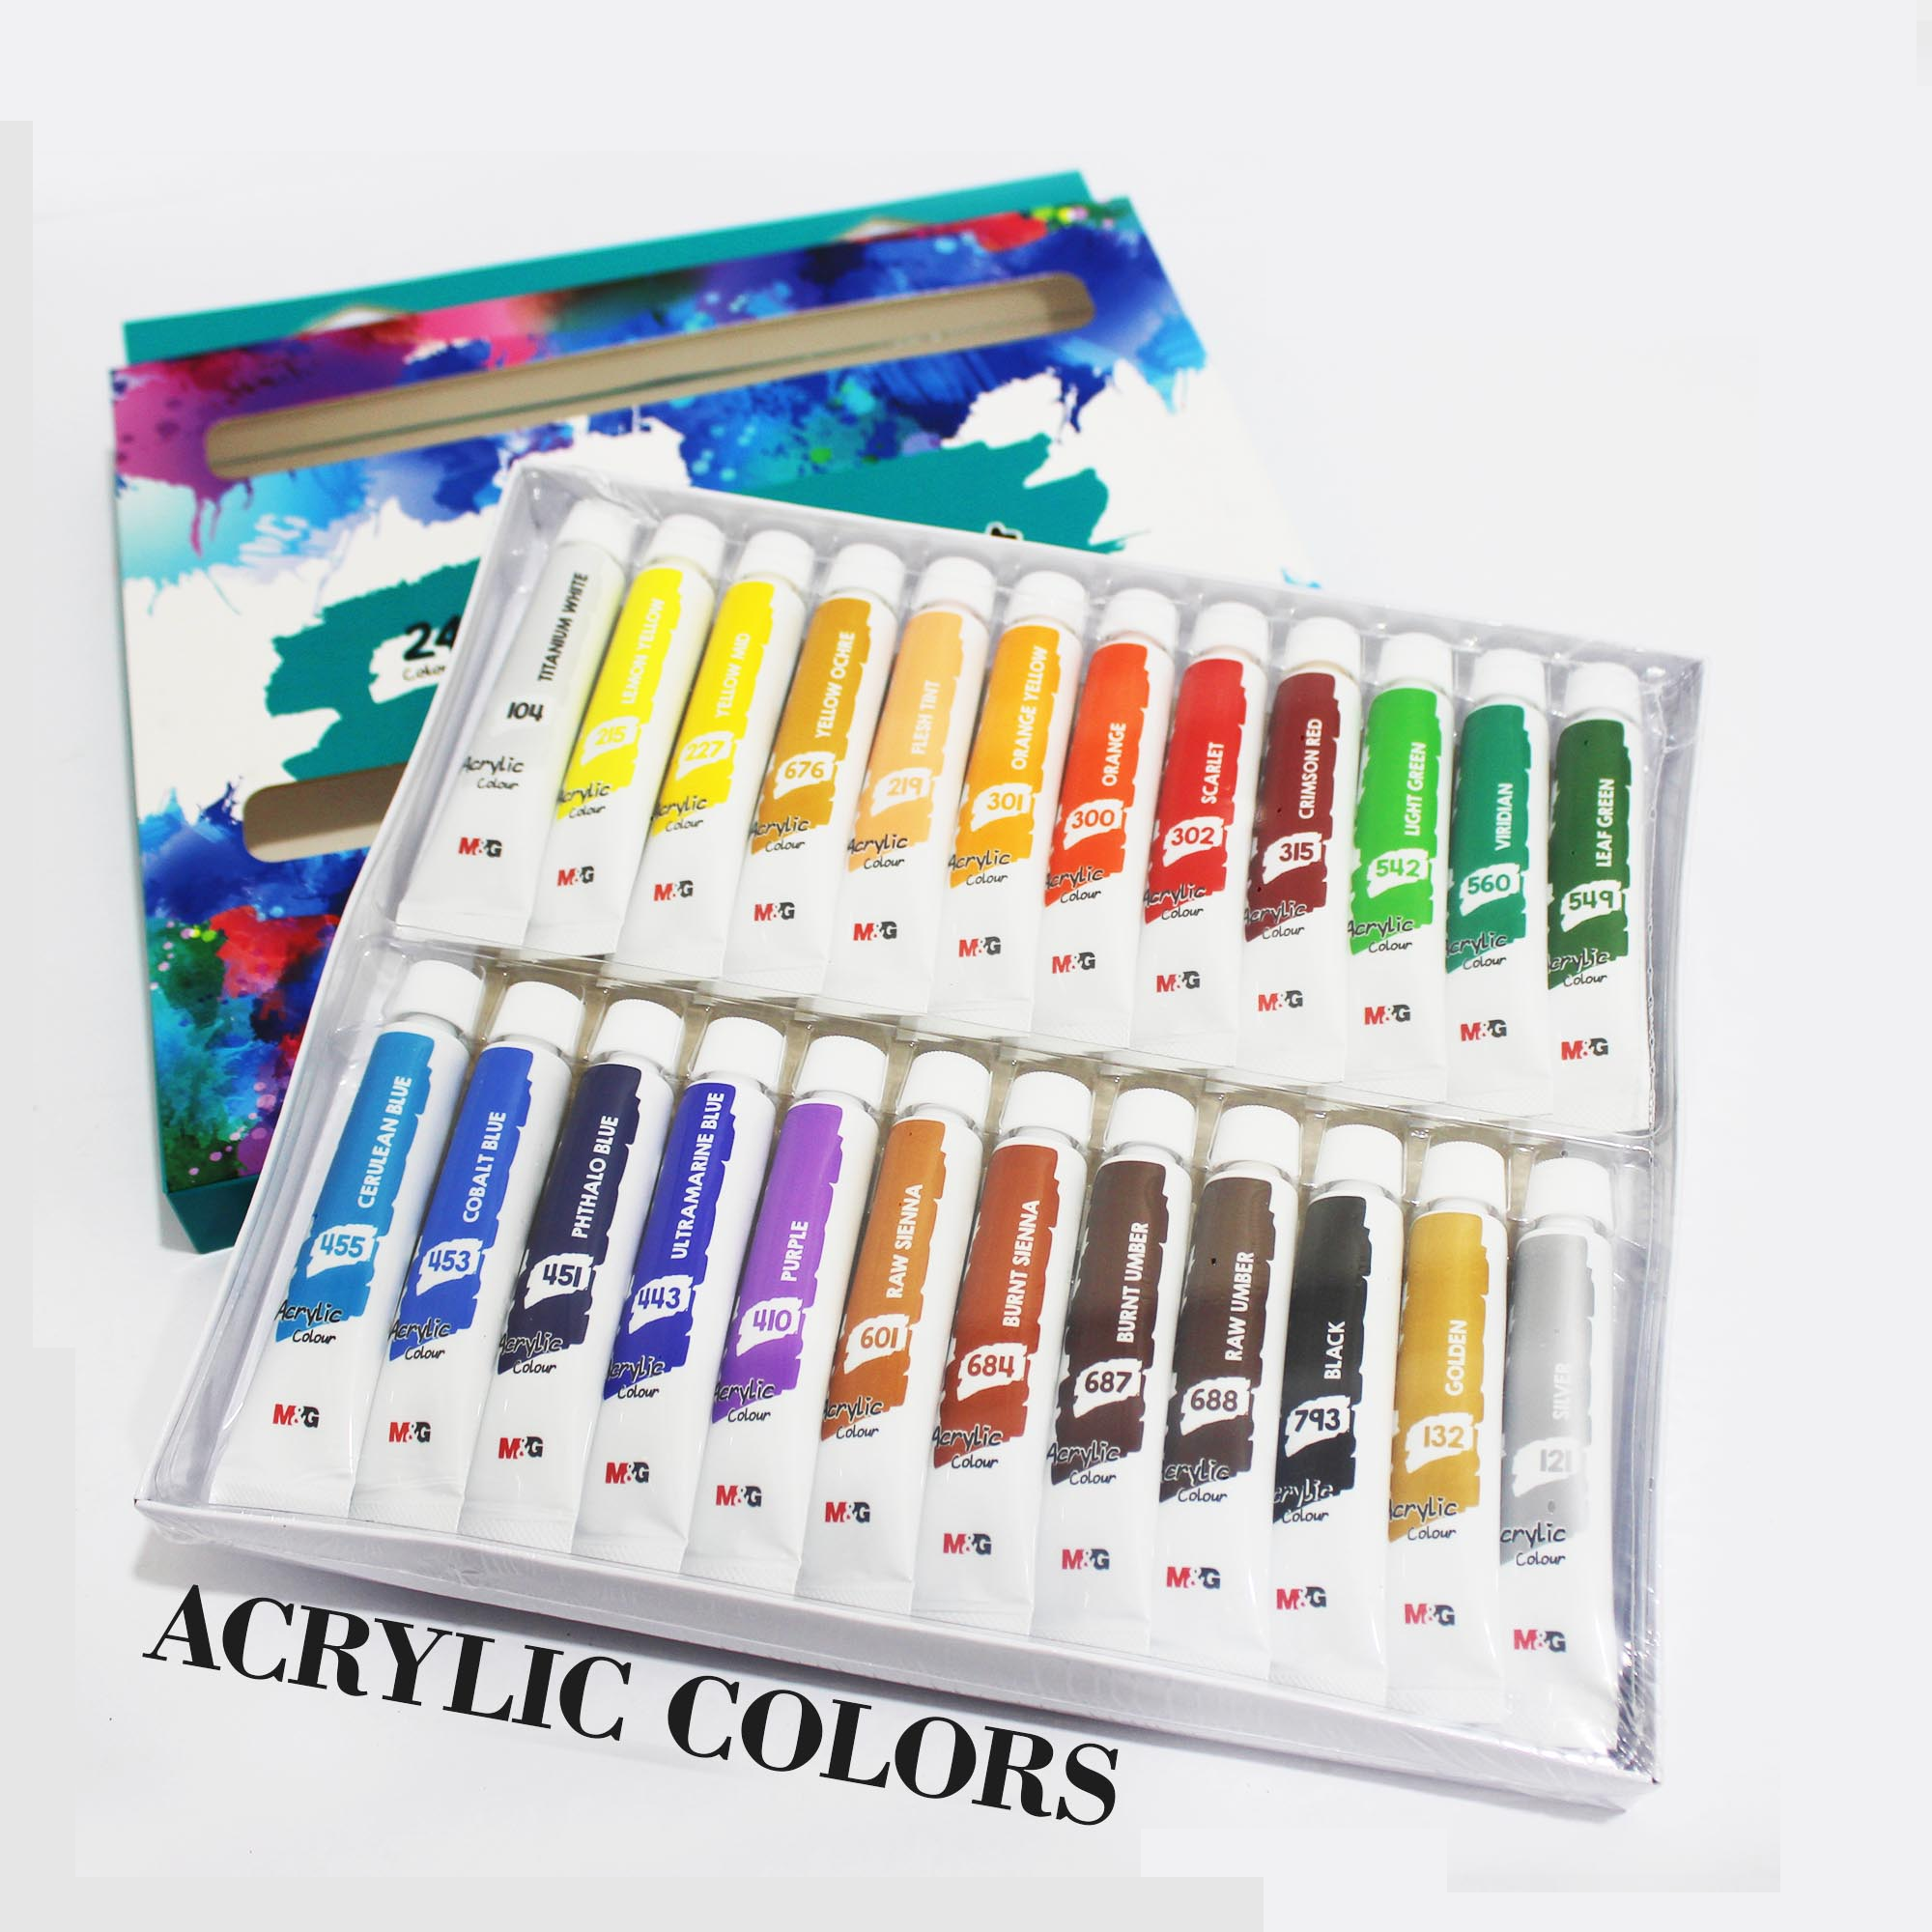 M&G Acrylic Colour Paint Set - The Blingspot Studio